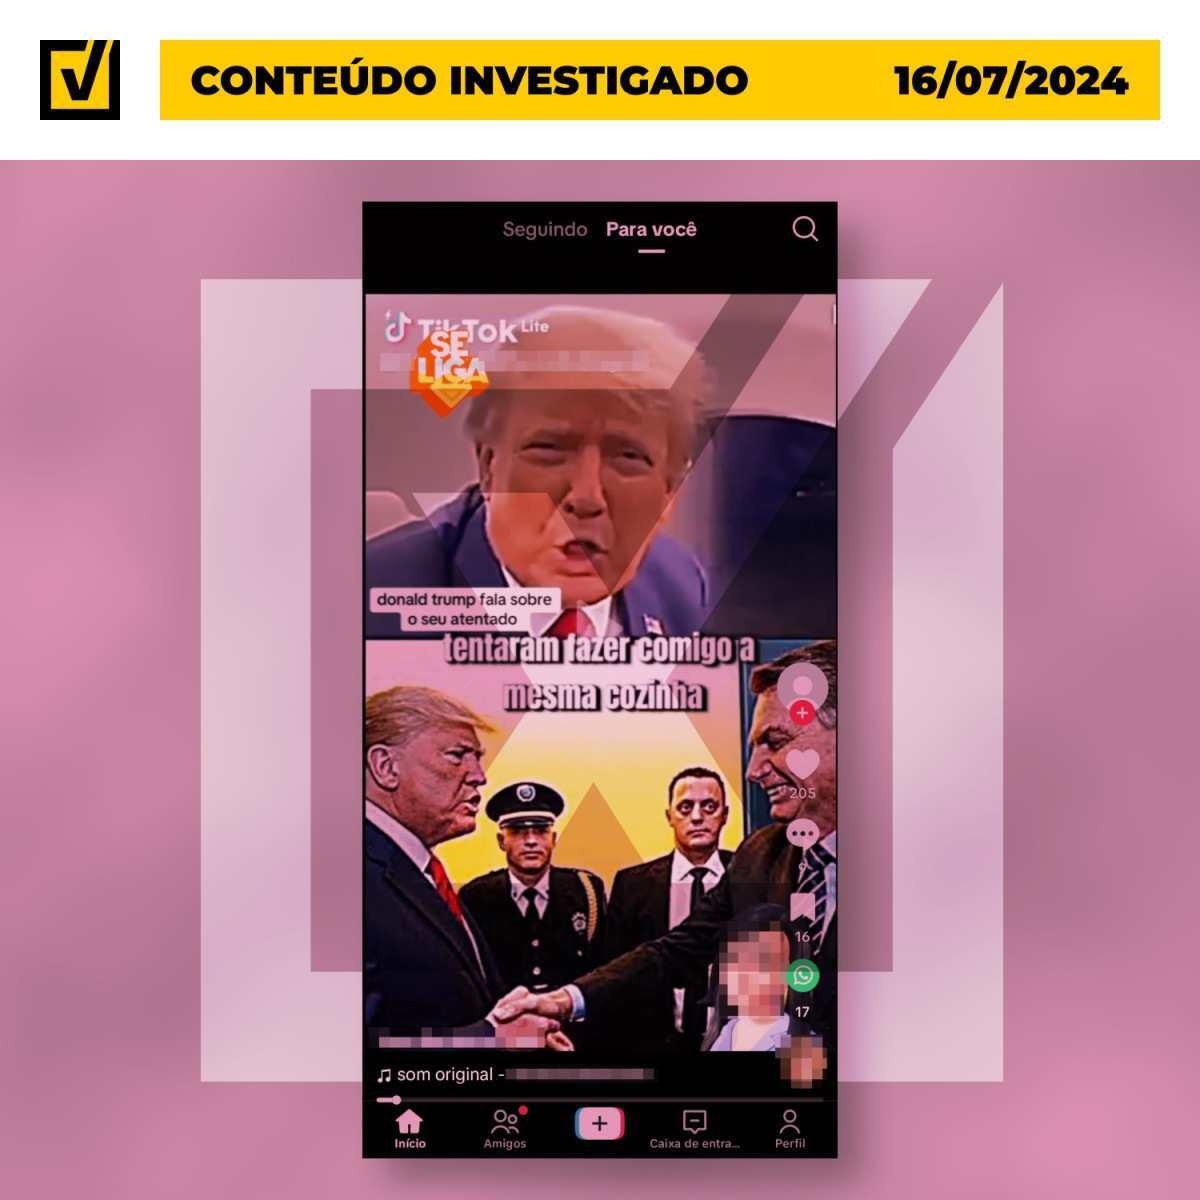 Vídeo com dublagem falsa engana ao dizer que Trump enviou mensagem para Bolsonaro após atentado